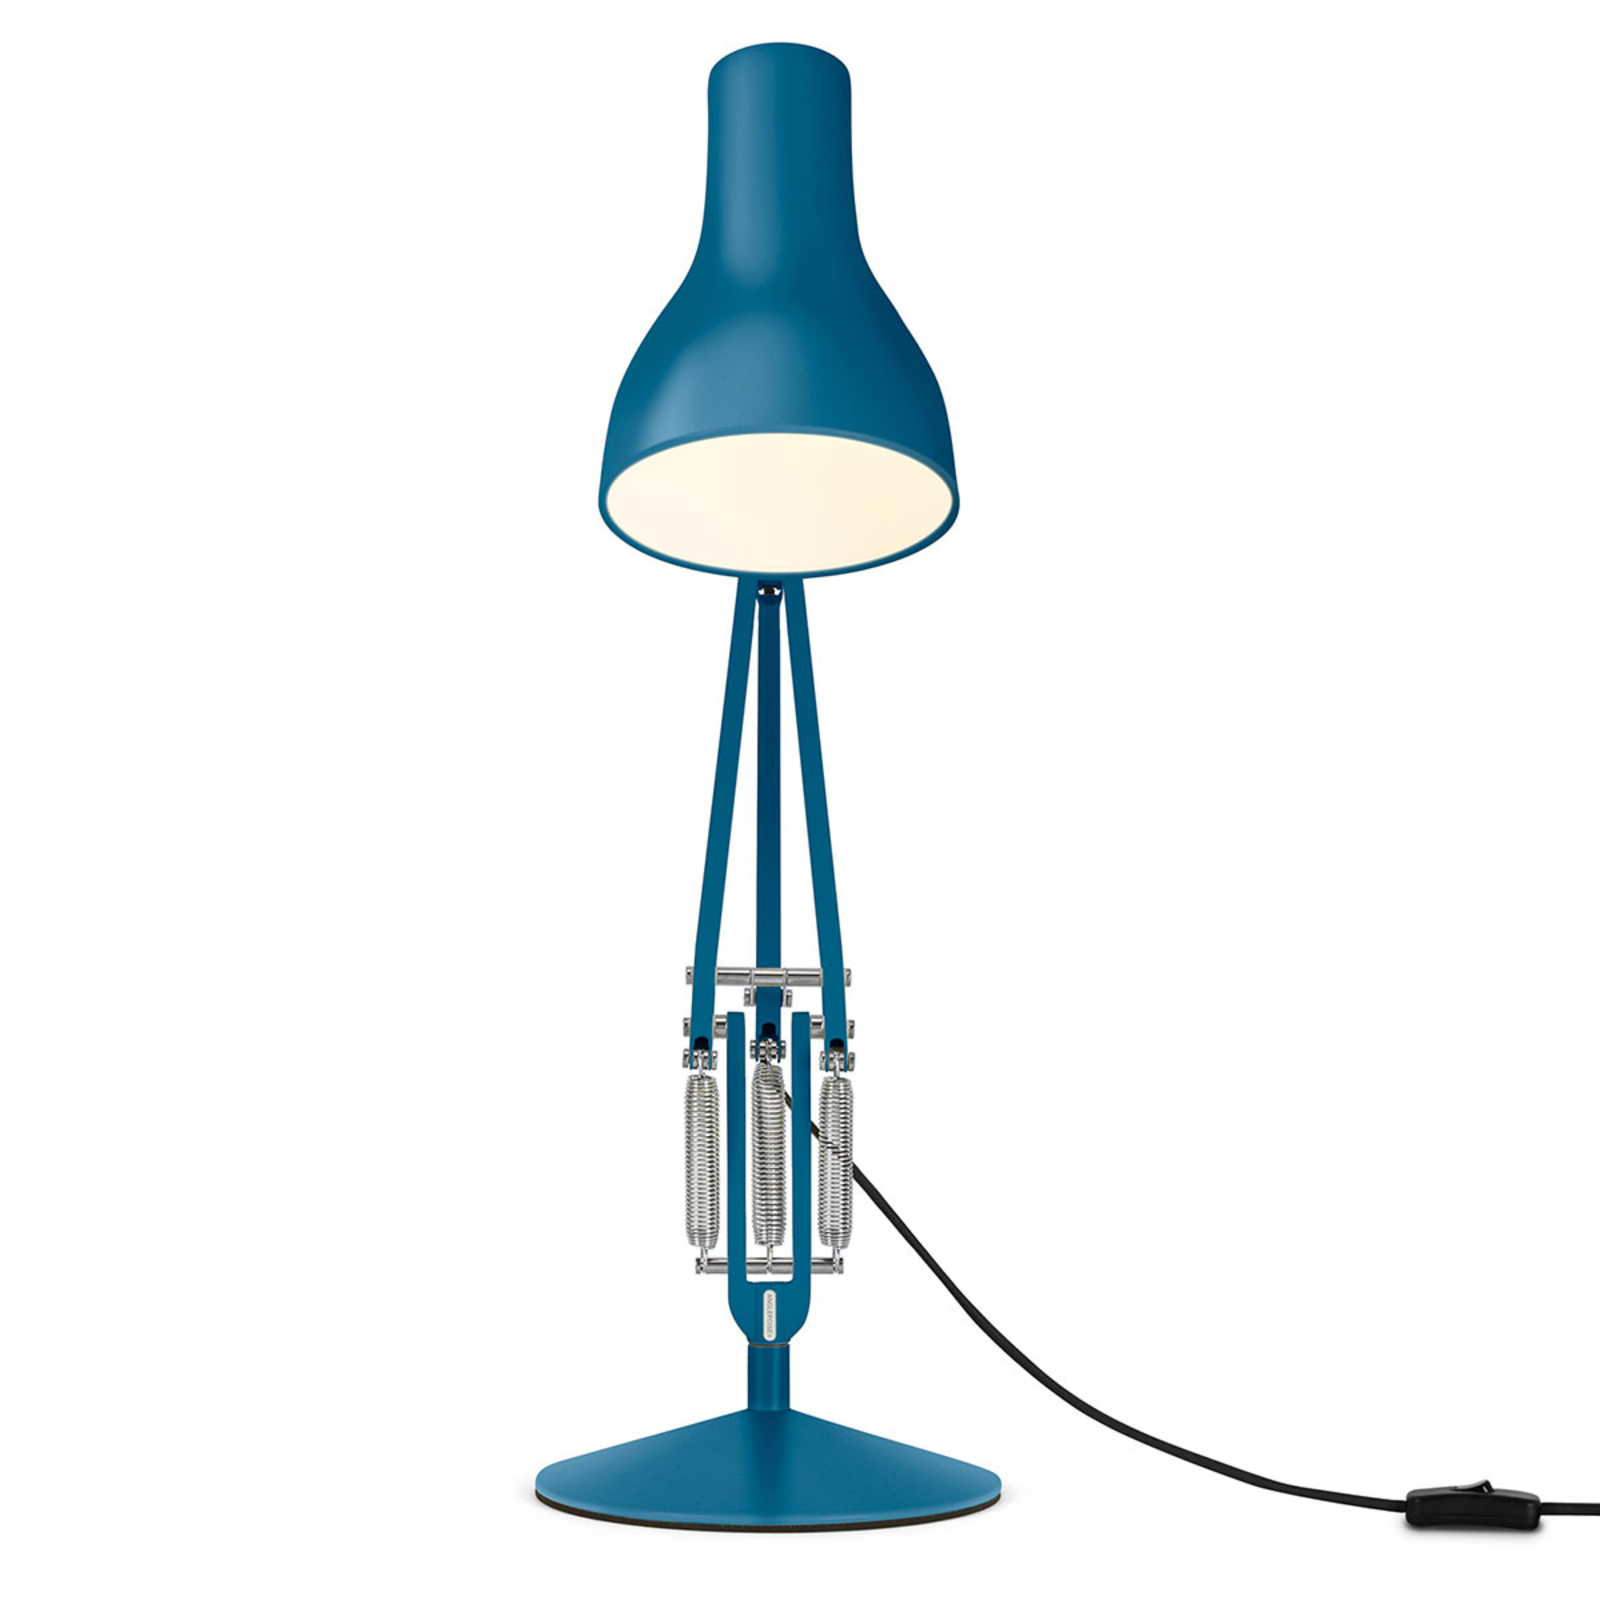 Stolová lampa Anglepoise Typ 75 Margaret Howell modrá